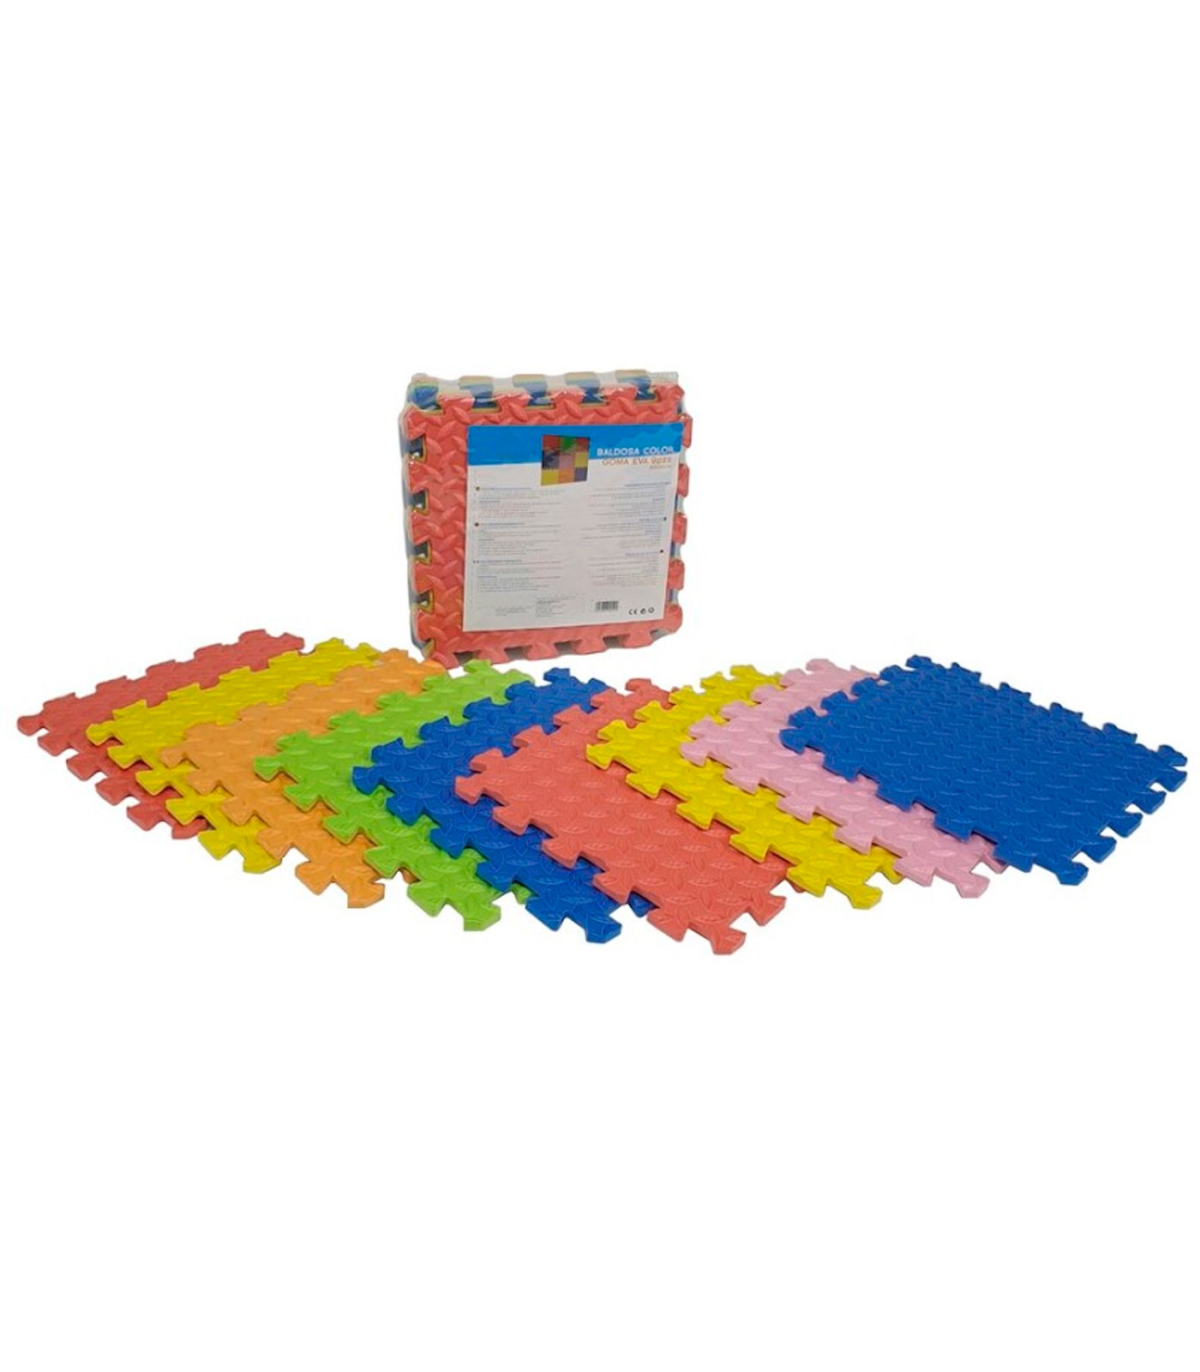 Puzzle de goma eva 9 piezas